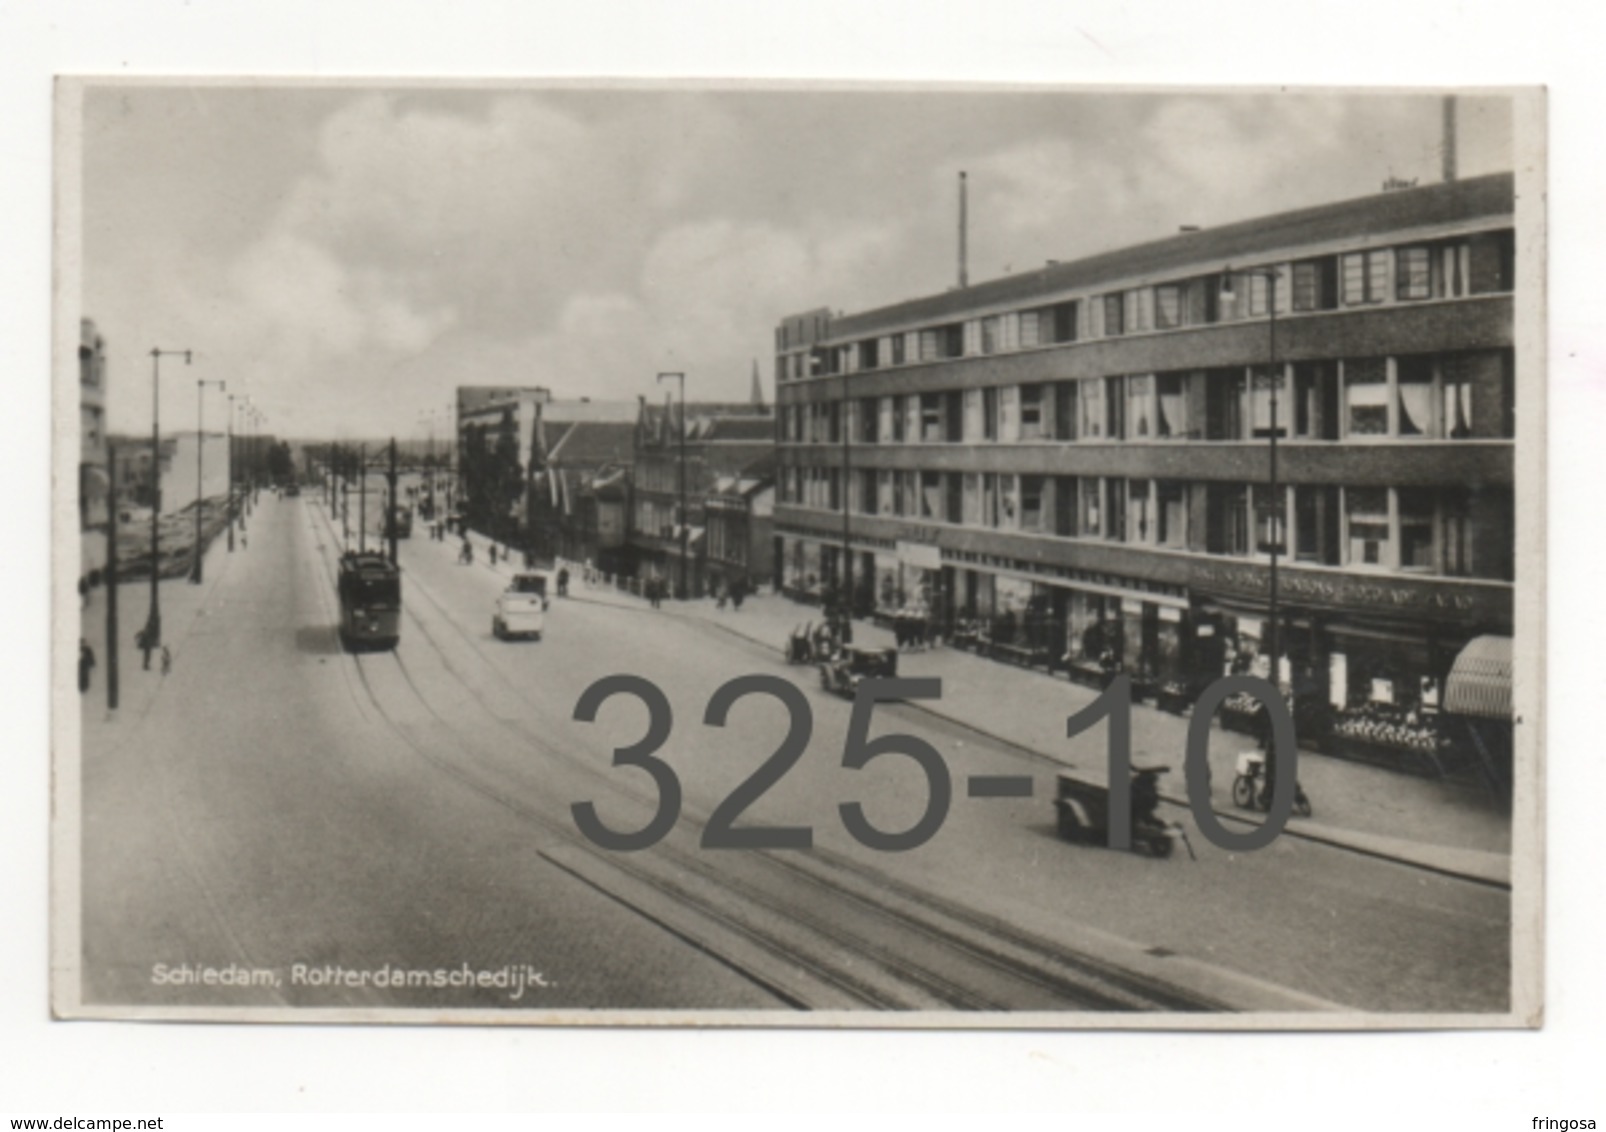 Schiedam, Rotterdamschedijk: Real Photo Used 1935 - Schiedam